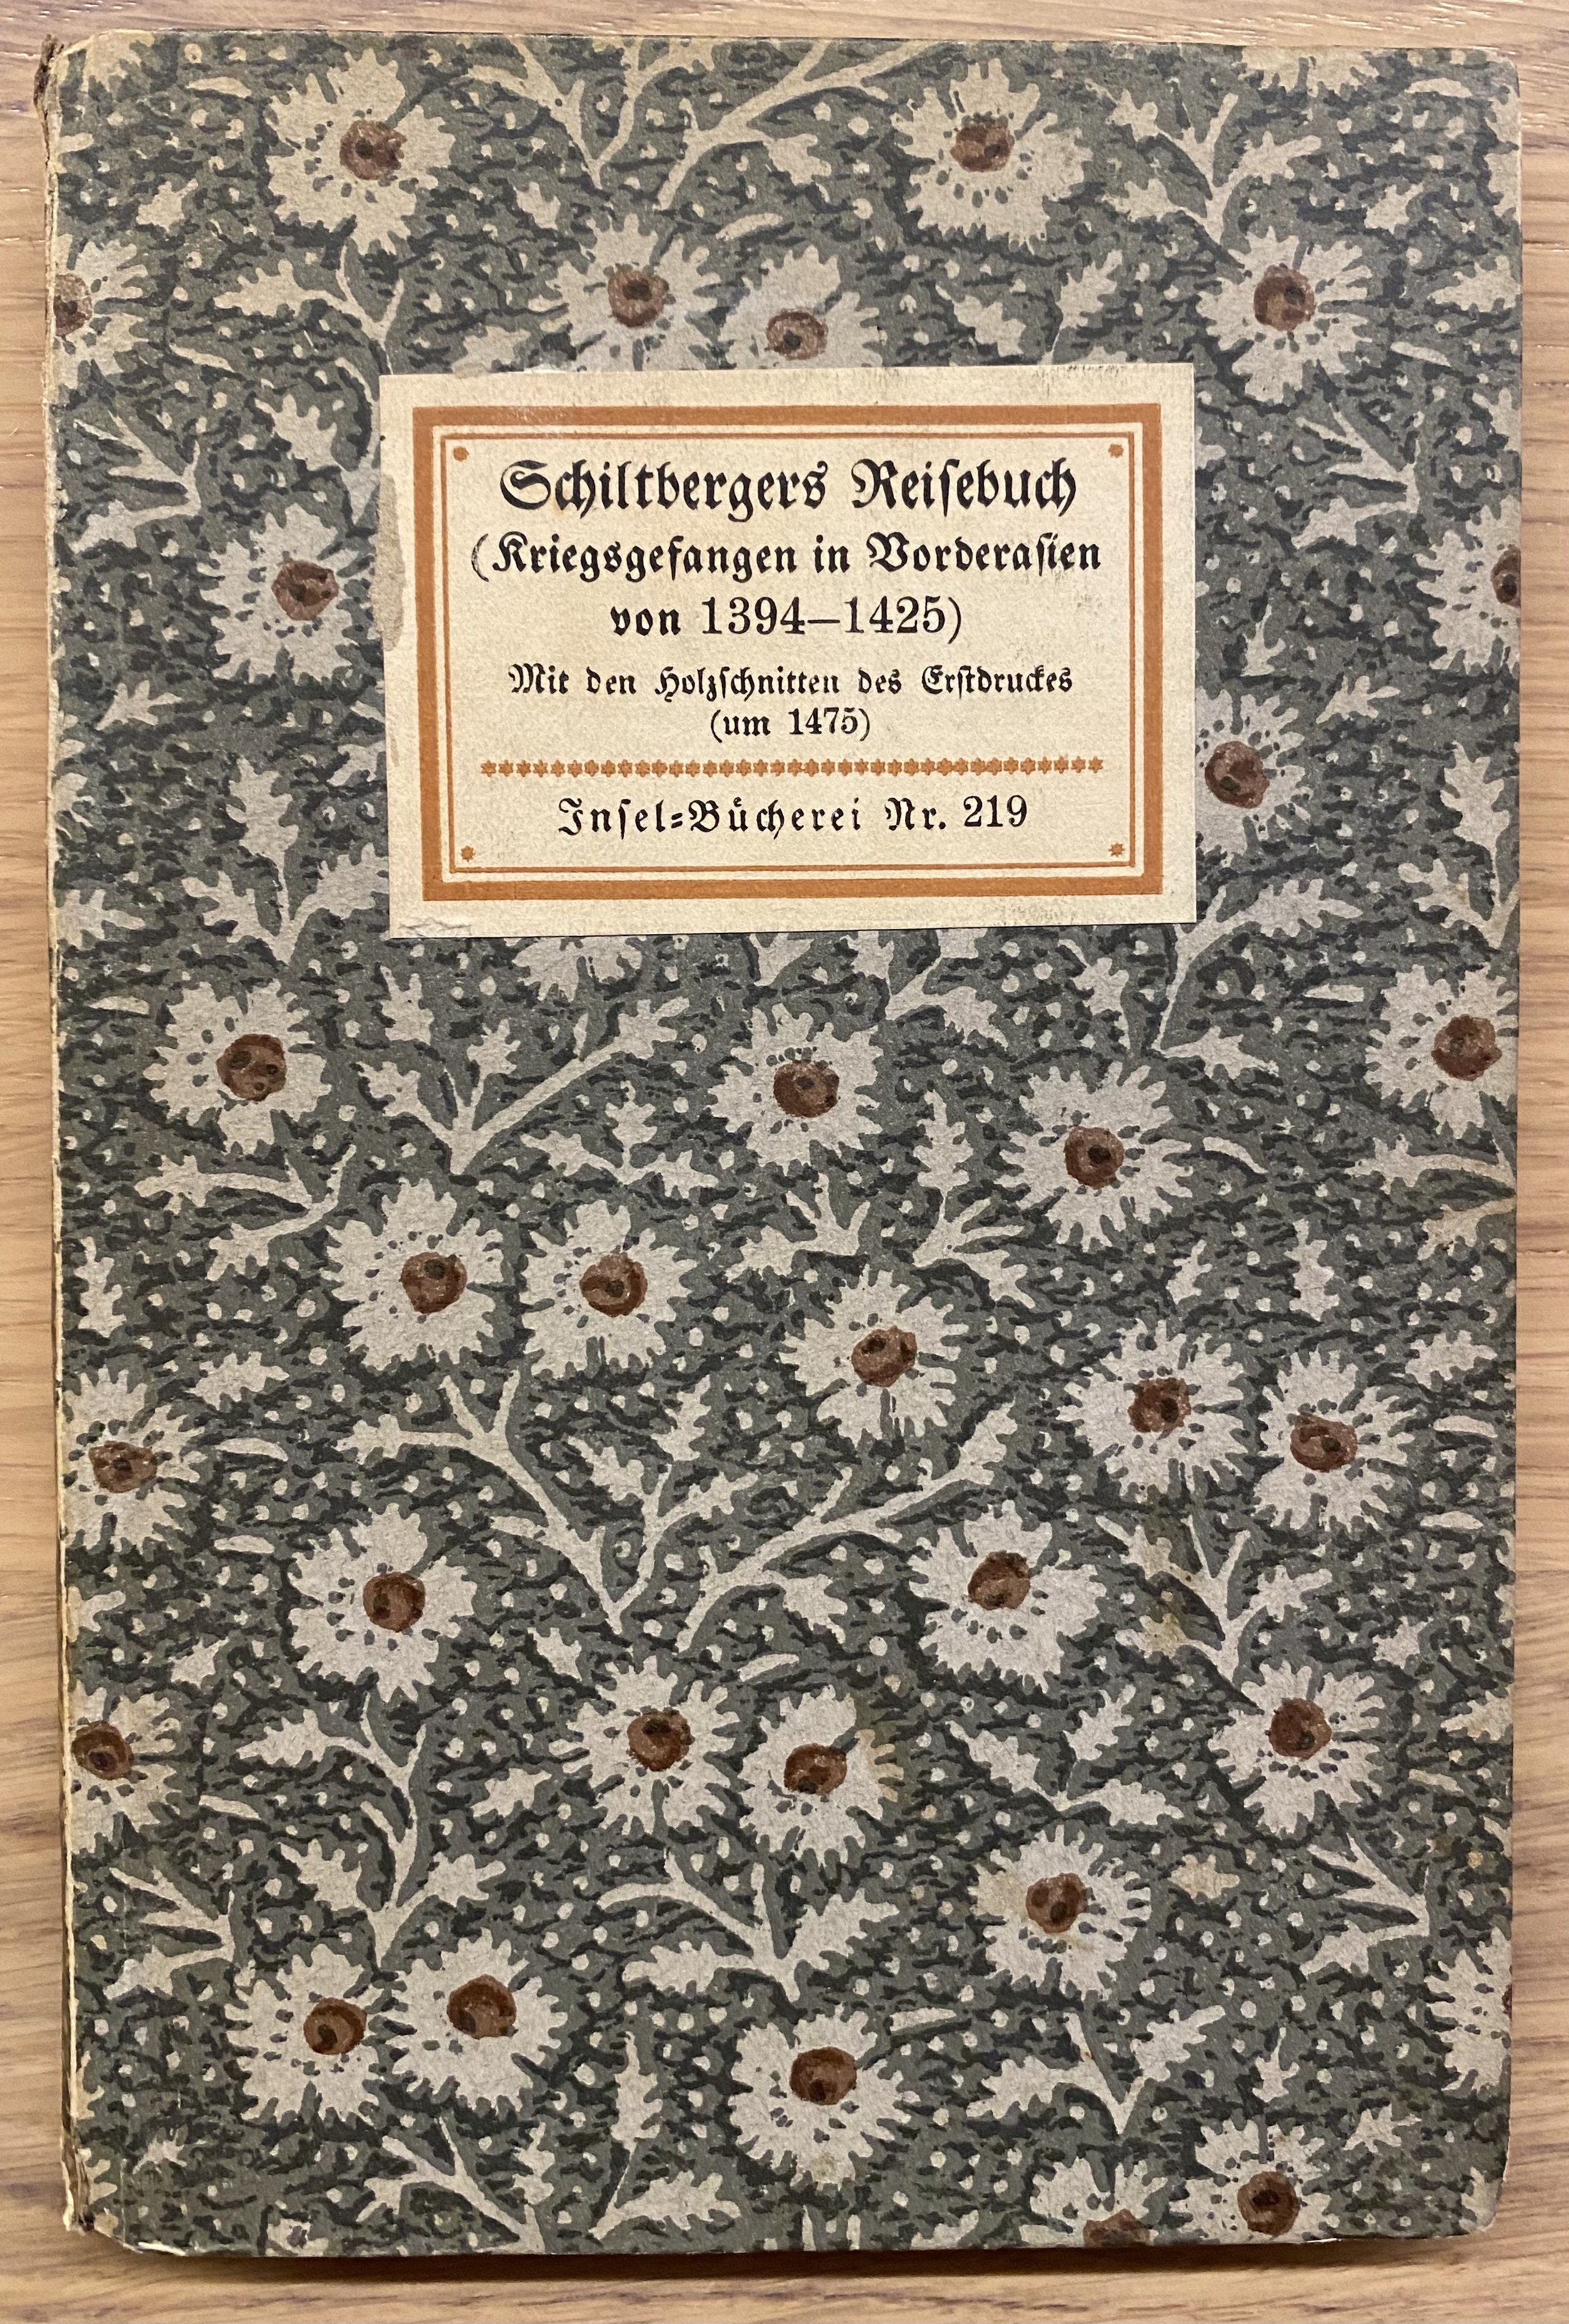 J. Schiltberger, Ein wunderbarliche unnd kürtzweylige Histori (Bibelmuseum der WWU Münster CC BY-NC-SA)